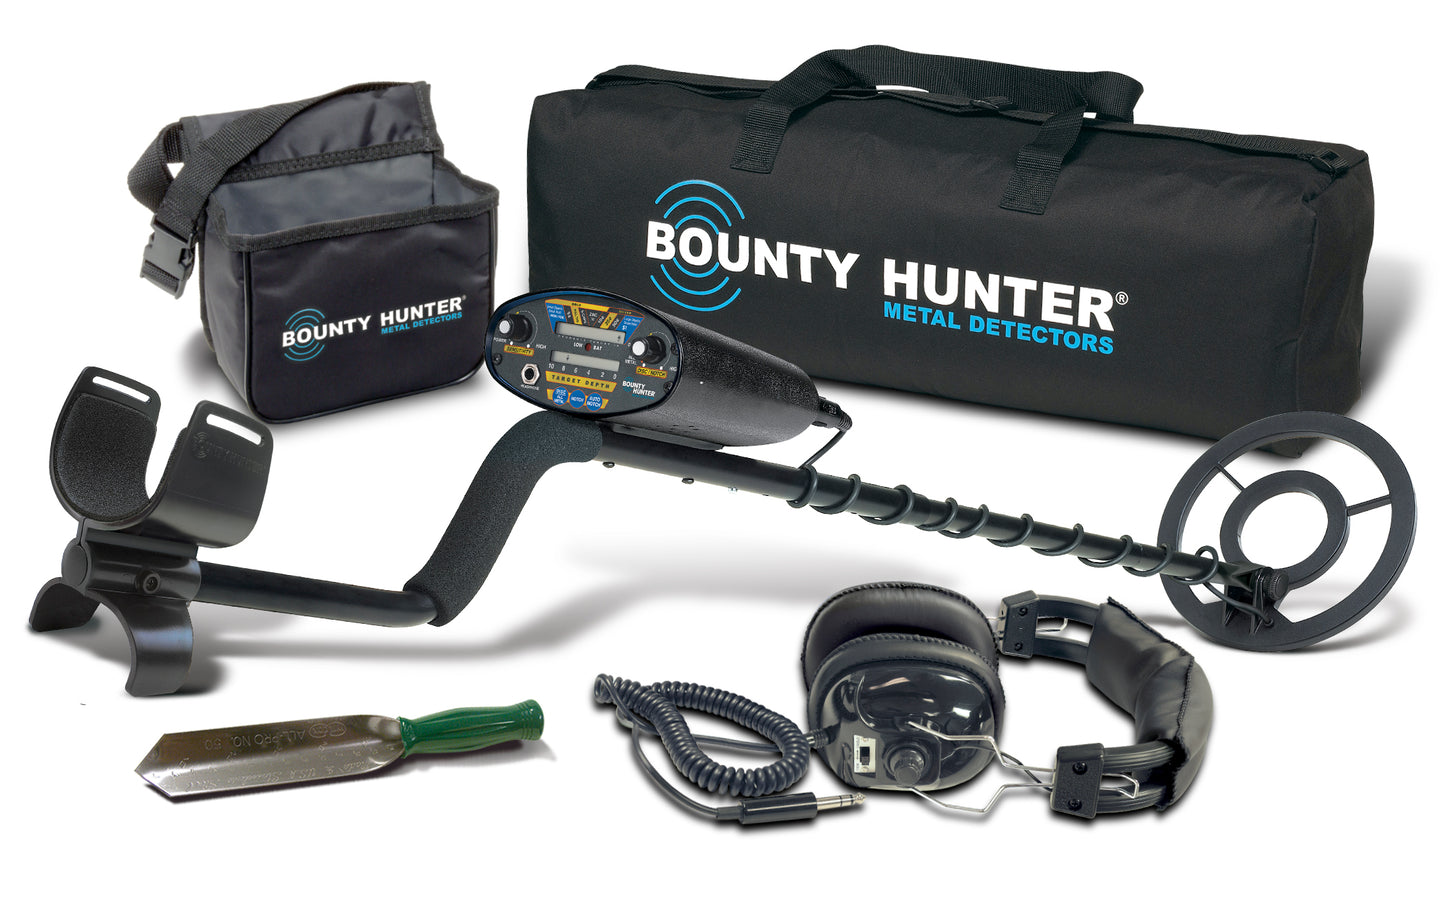 Bounty Hunter Quickdraw II Metal Detector